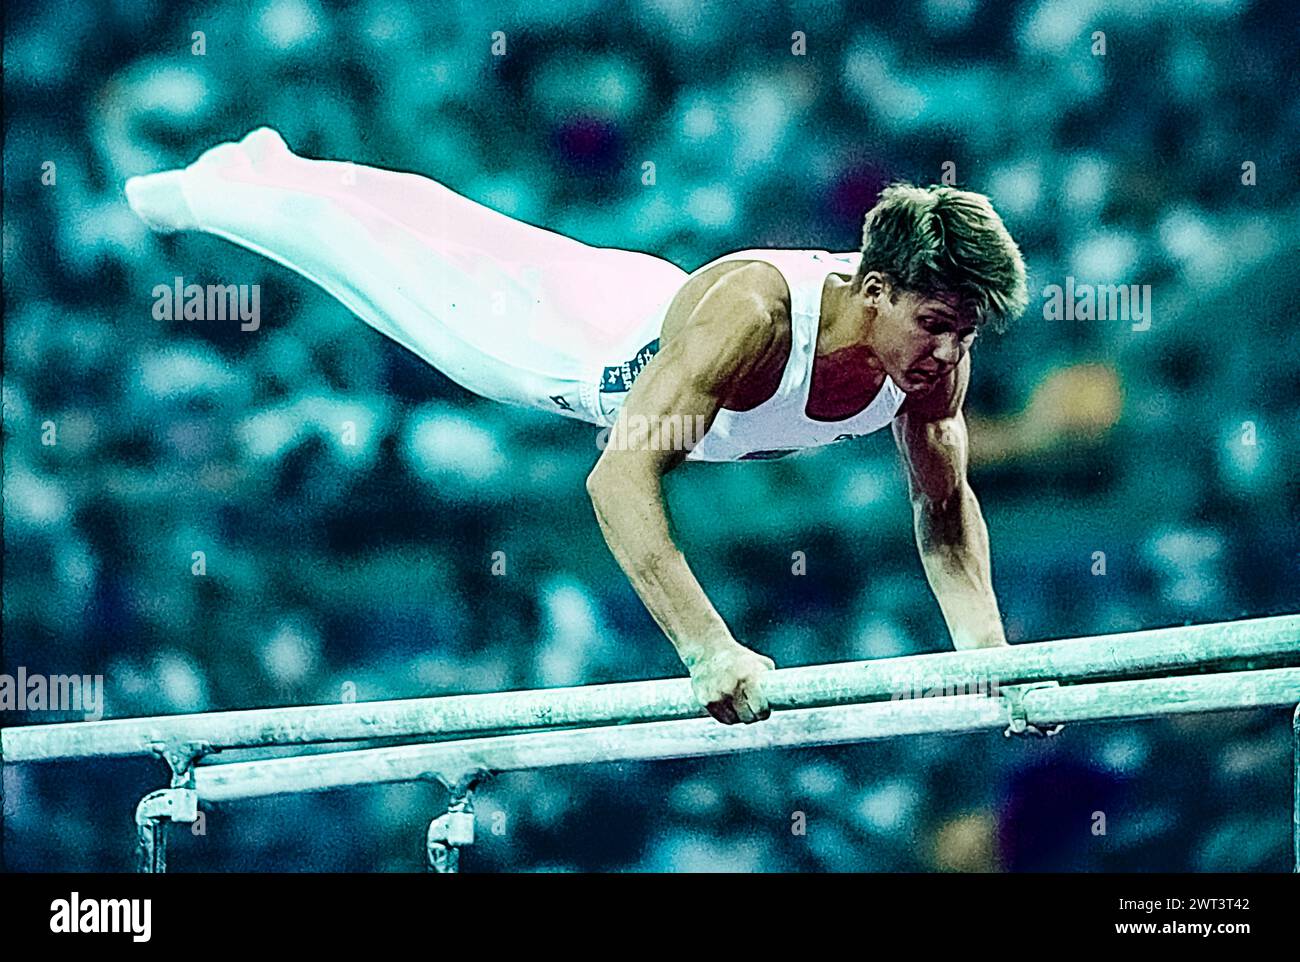 Chris Wallwer (États-Unis) en compétition dans l'équipe artistique masculine de gymnastique générale aux Jeux Olympiques d'été de 1992. Banque D'Images